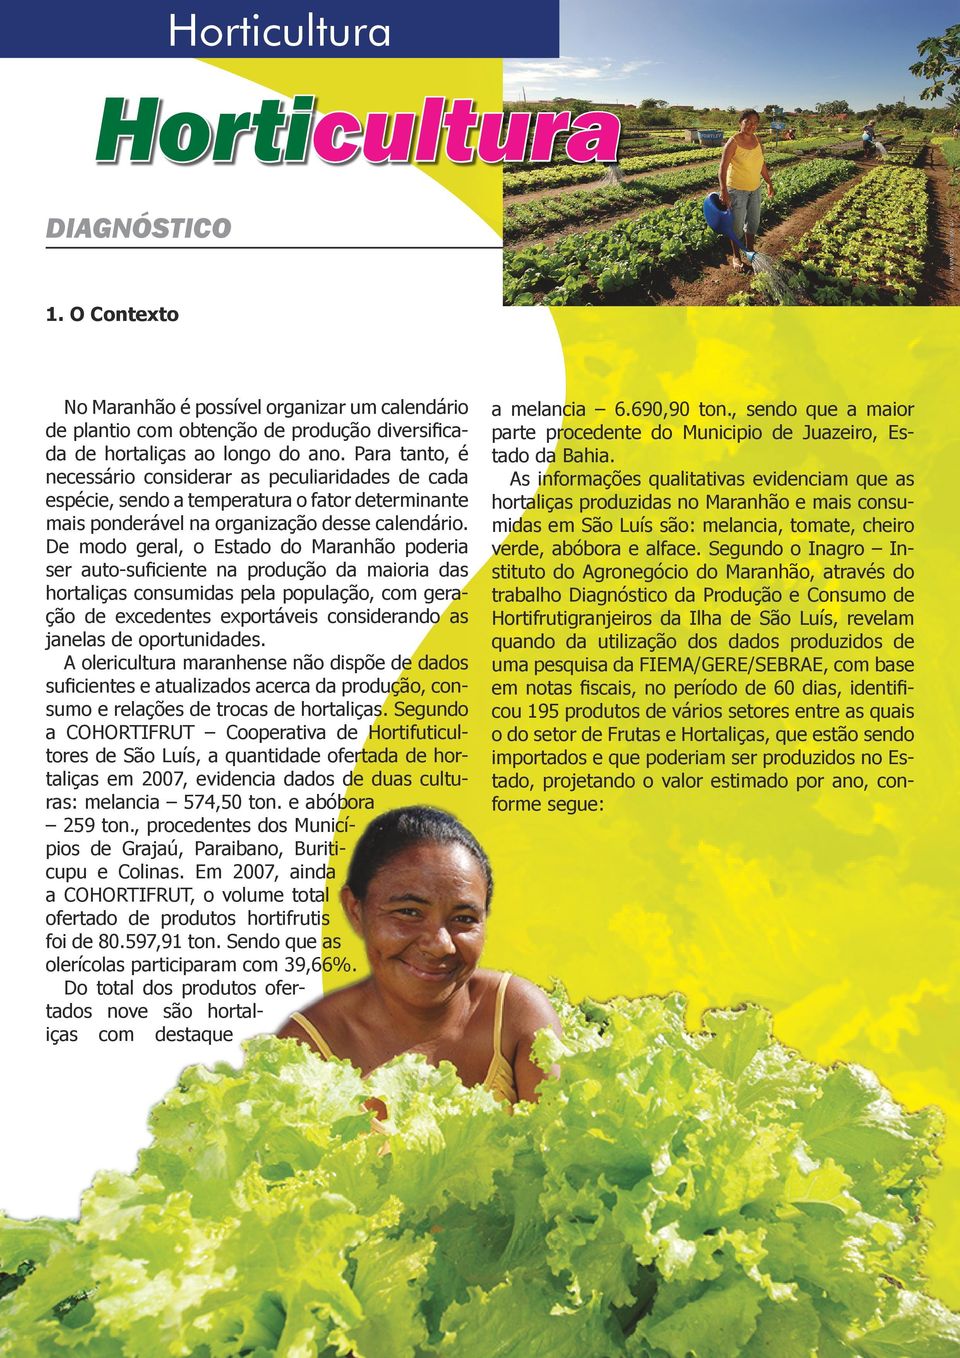 De modo geral, o Estado do Maranhão poderia ser auto-suficiente na produção da maioria das hortaliças consumidas pela população, com geração de excedentes exportáveis considerando as janelas de